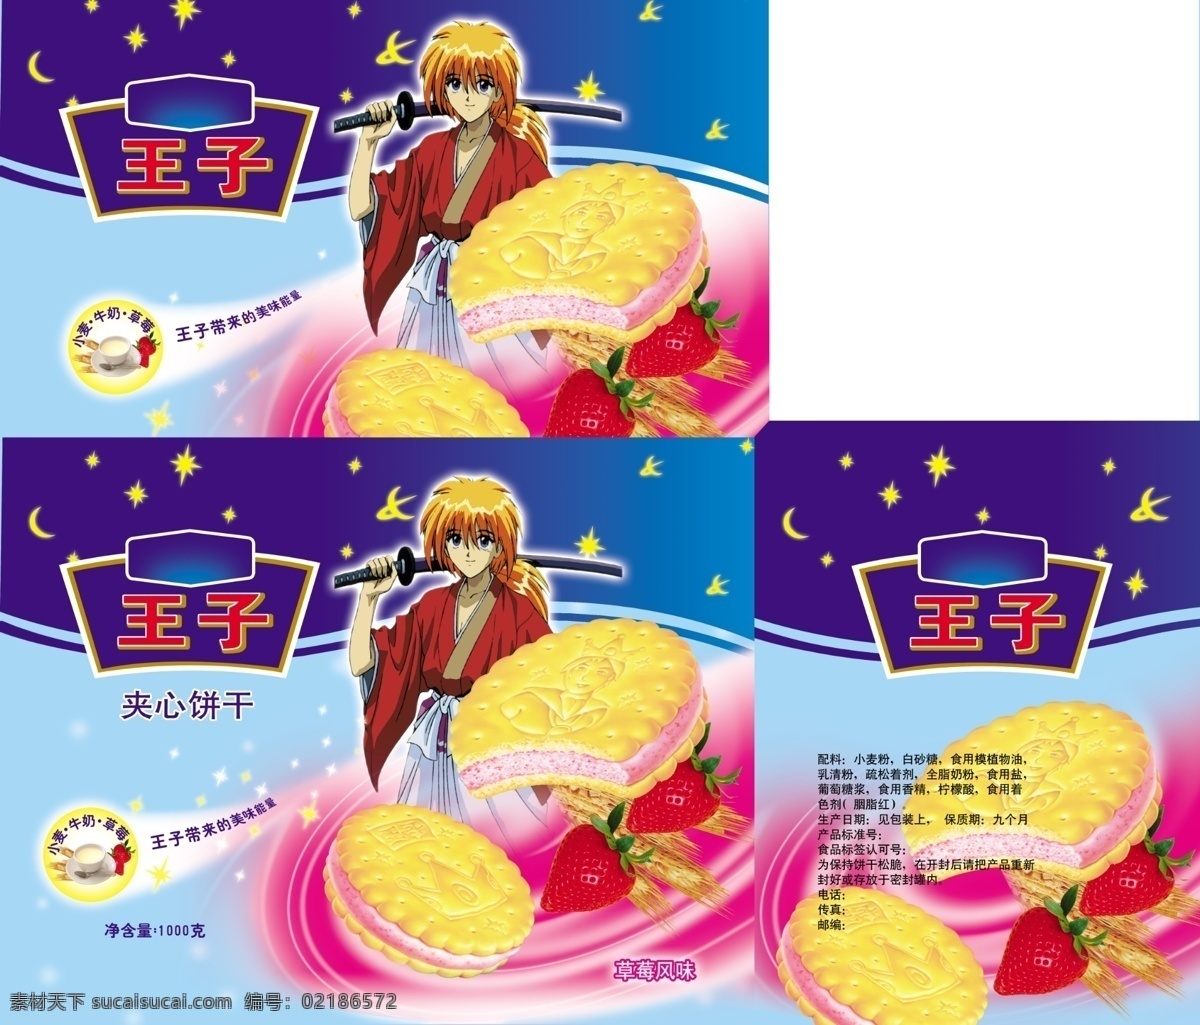 包装设计 草莓 广告设计模板 源文件 王子 夹心 饼干 包装 模板下载 夹心饼干 日本卡通人物 牛奶杯子 矢量图 日常生活